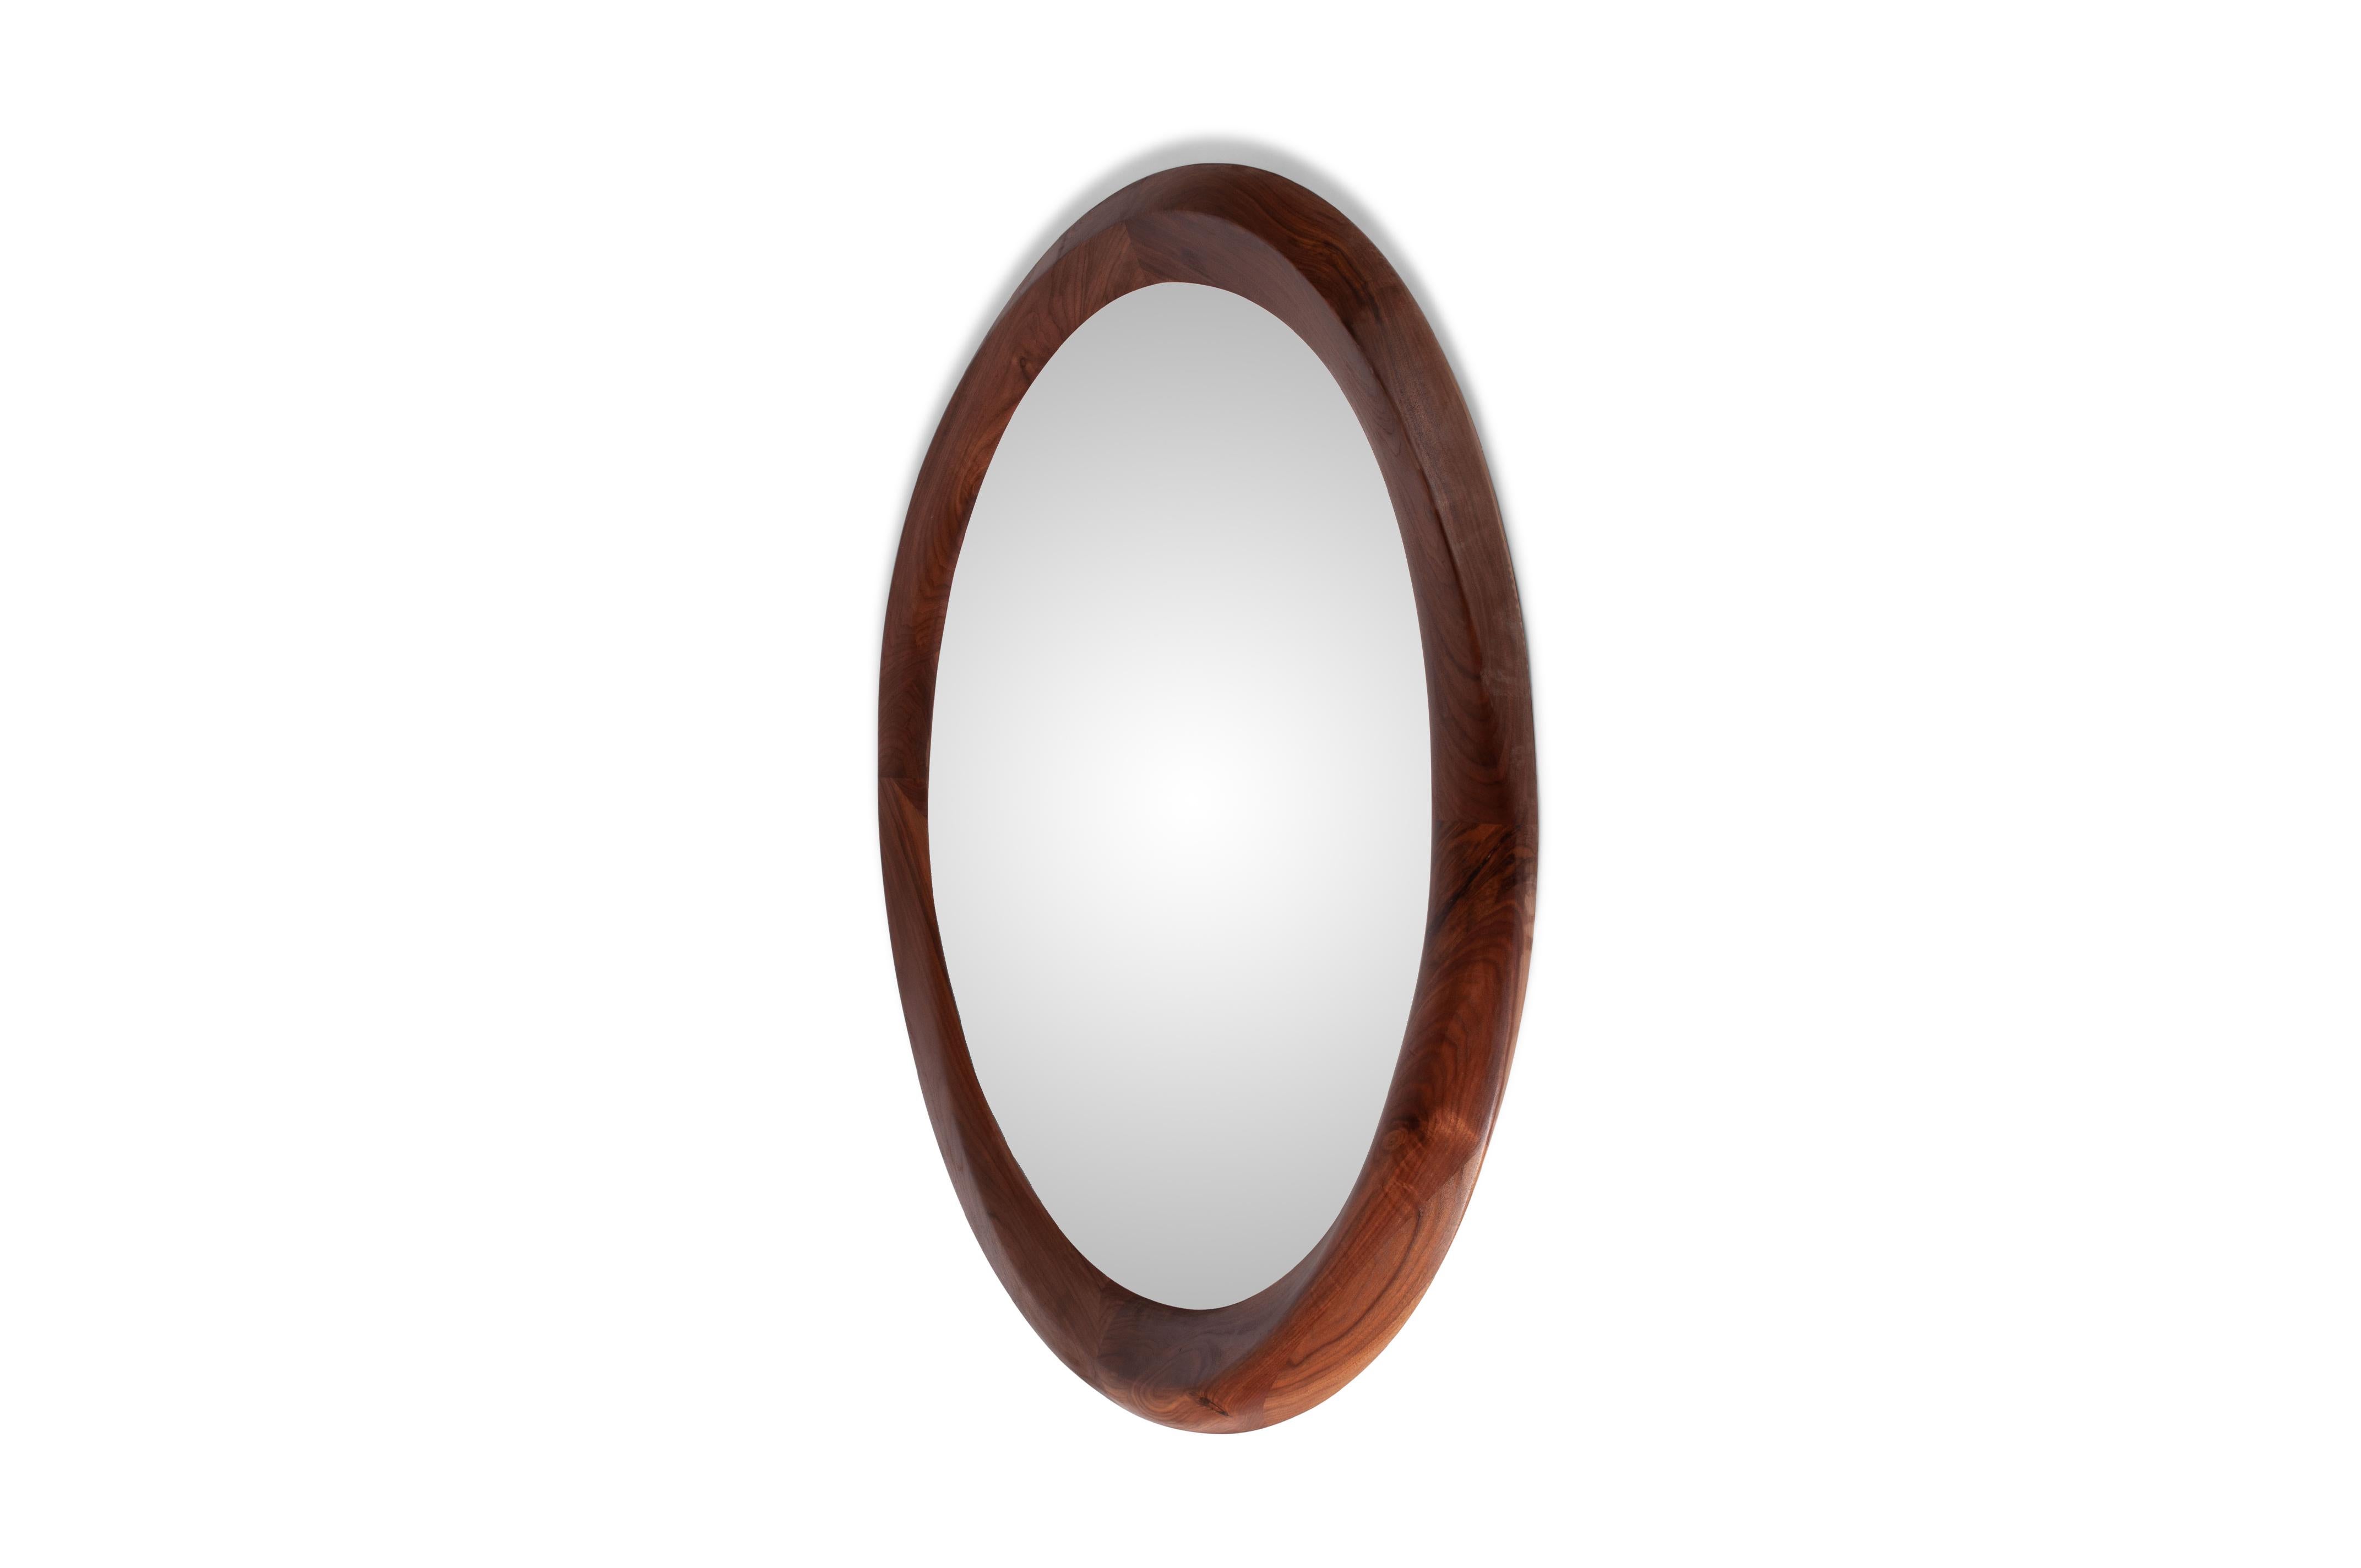 Miroir de forme ronde avec des dimensions de 60